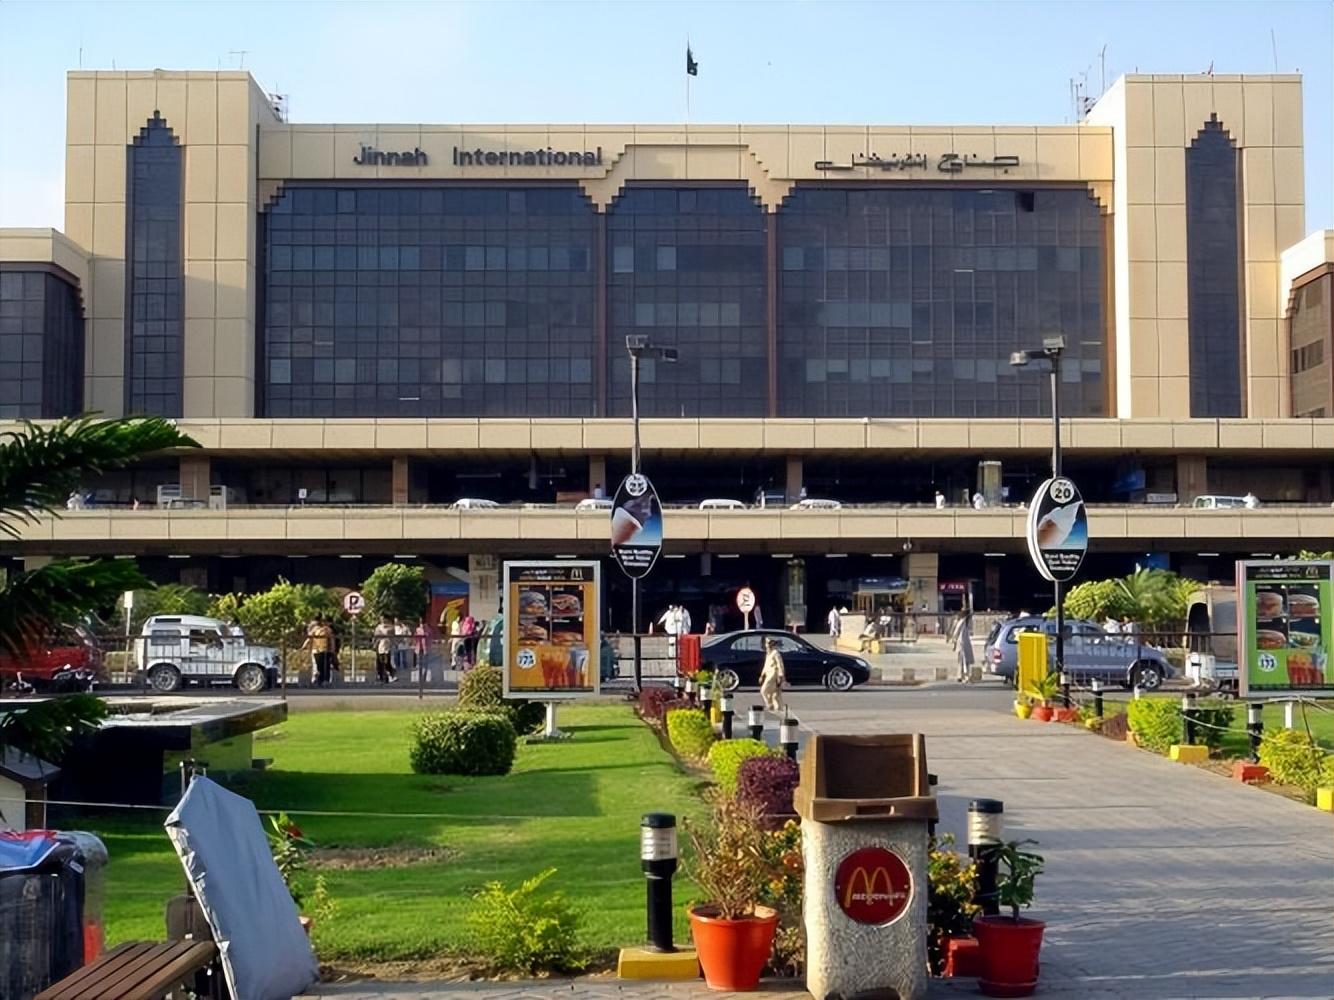 7,真纳国际机场是巴基斯坦最大的机场,于1929年通航,距离卡拉奇市区约